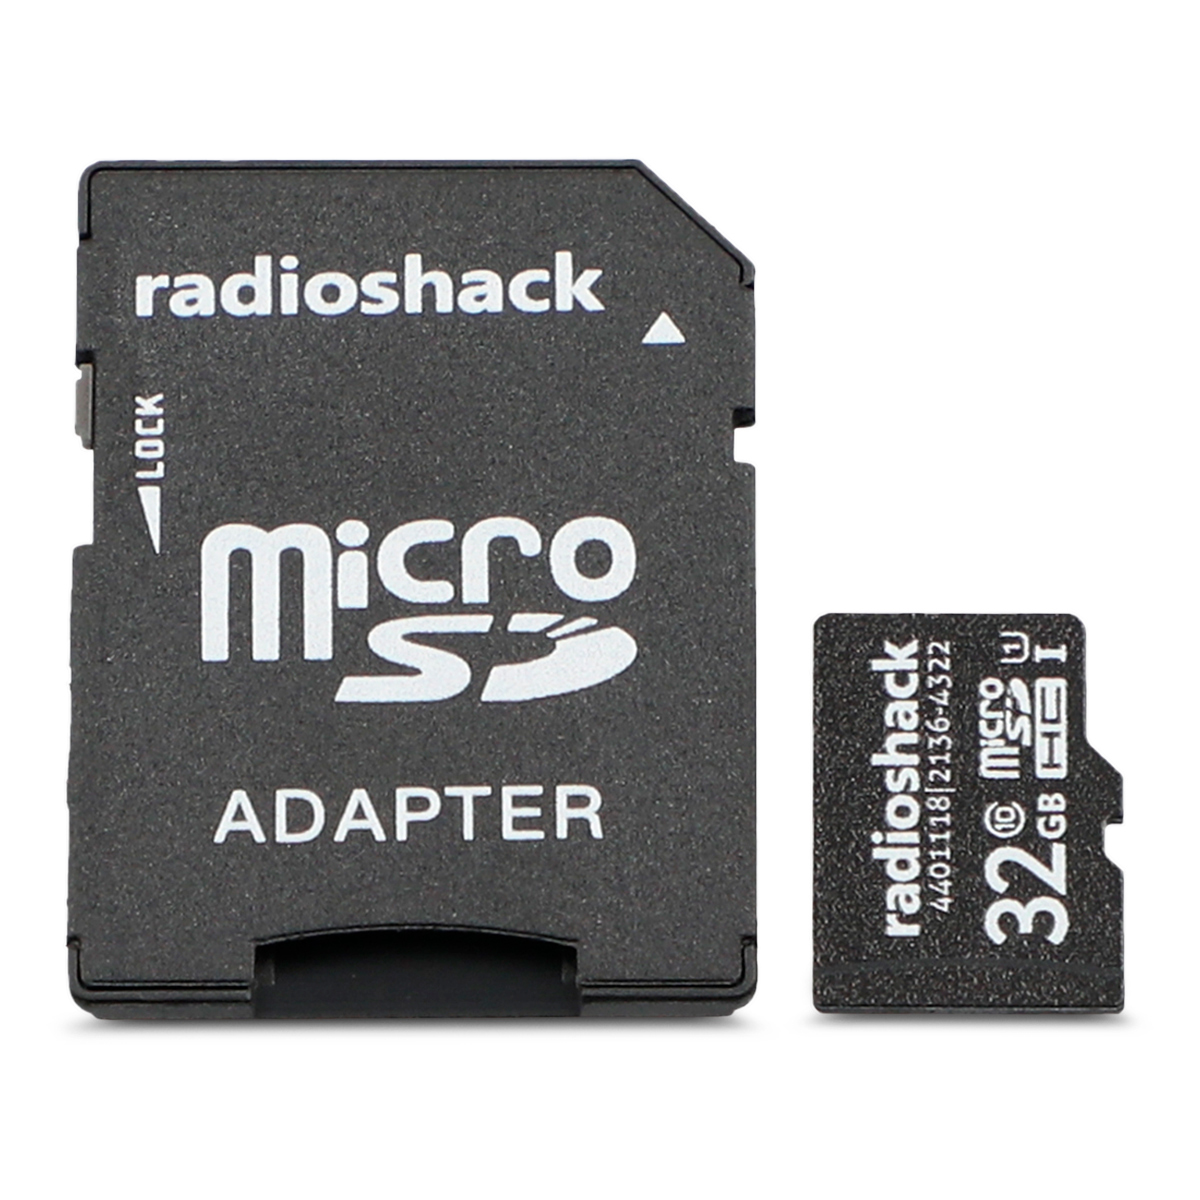 Tarjeta MicroSDHC RadioShack Clase 10 32 gb